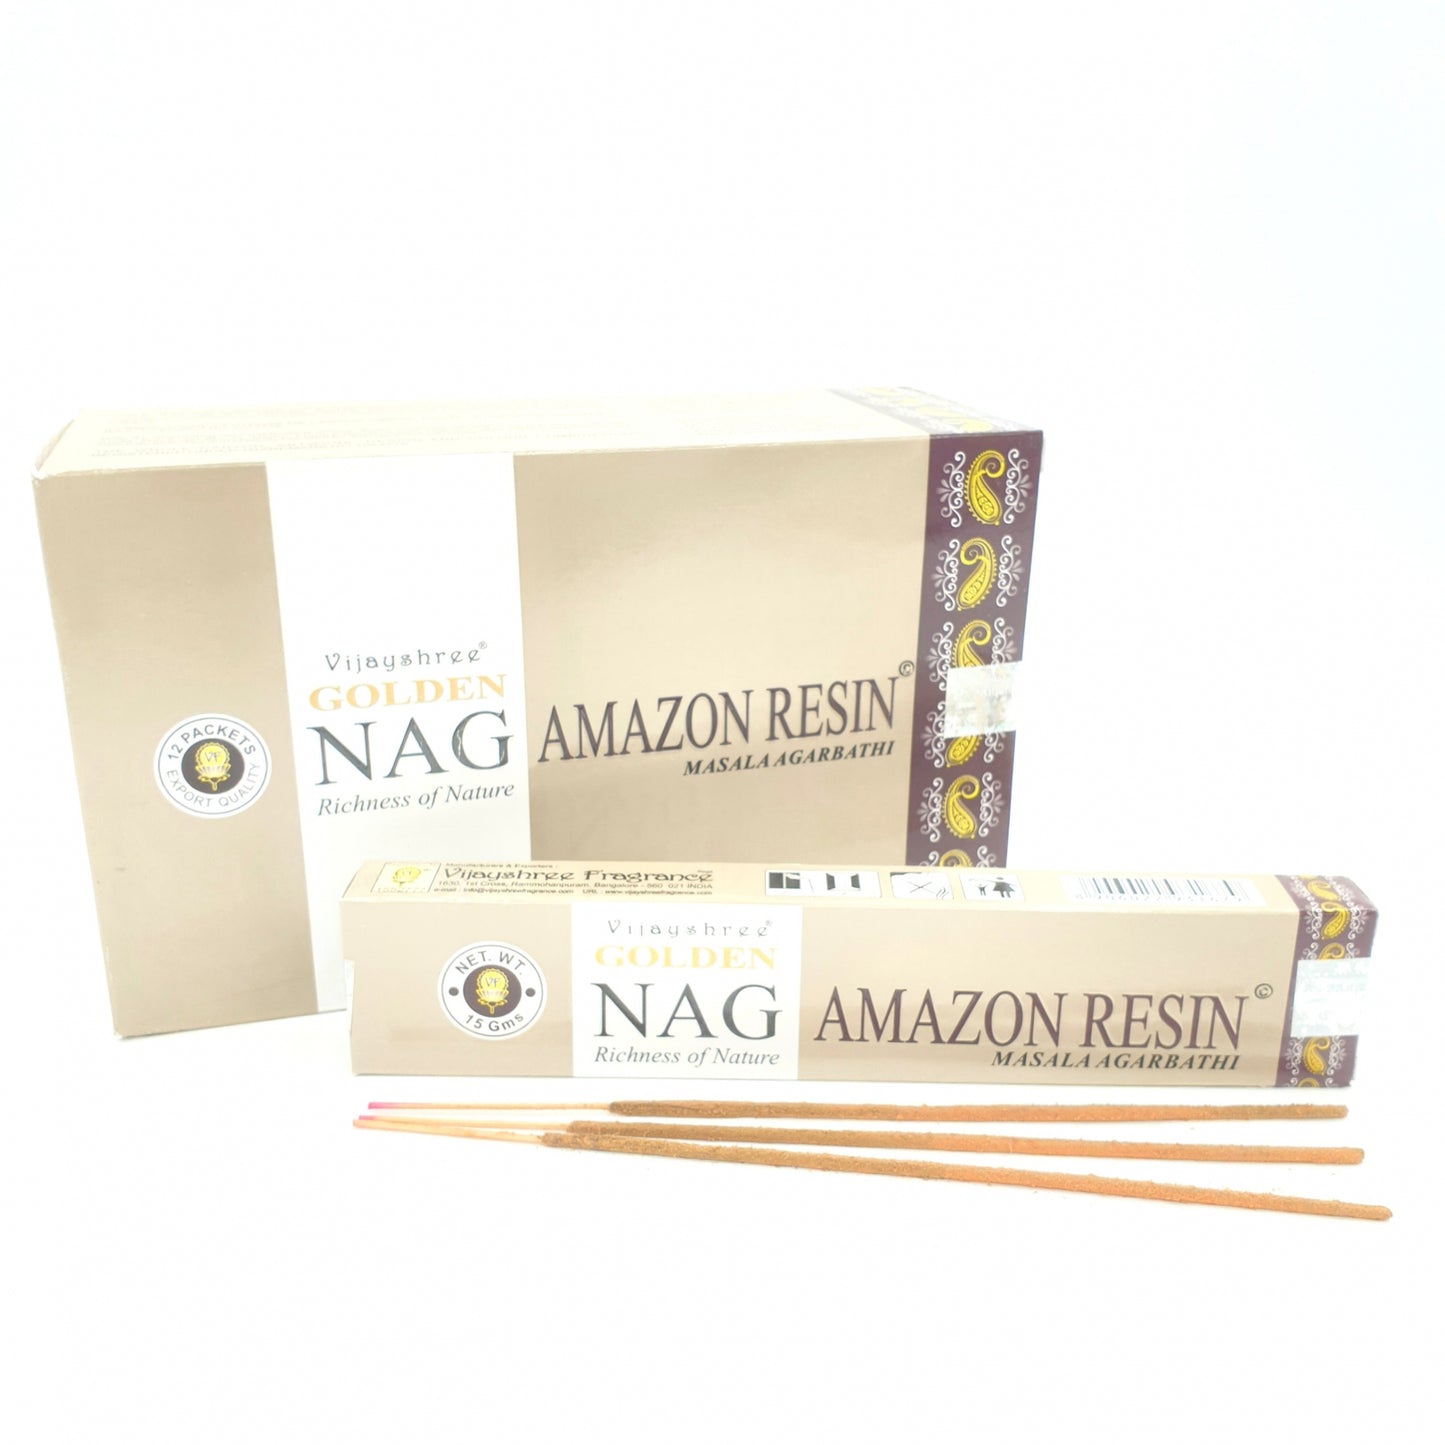 Golden Nag Amazon Resin - Die Essenz der Natur für Ihre Sinne